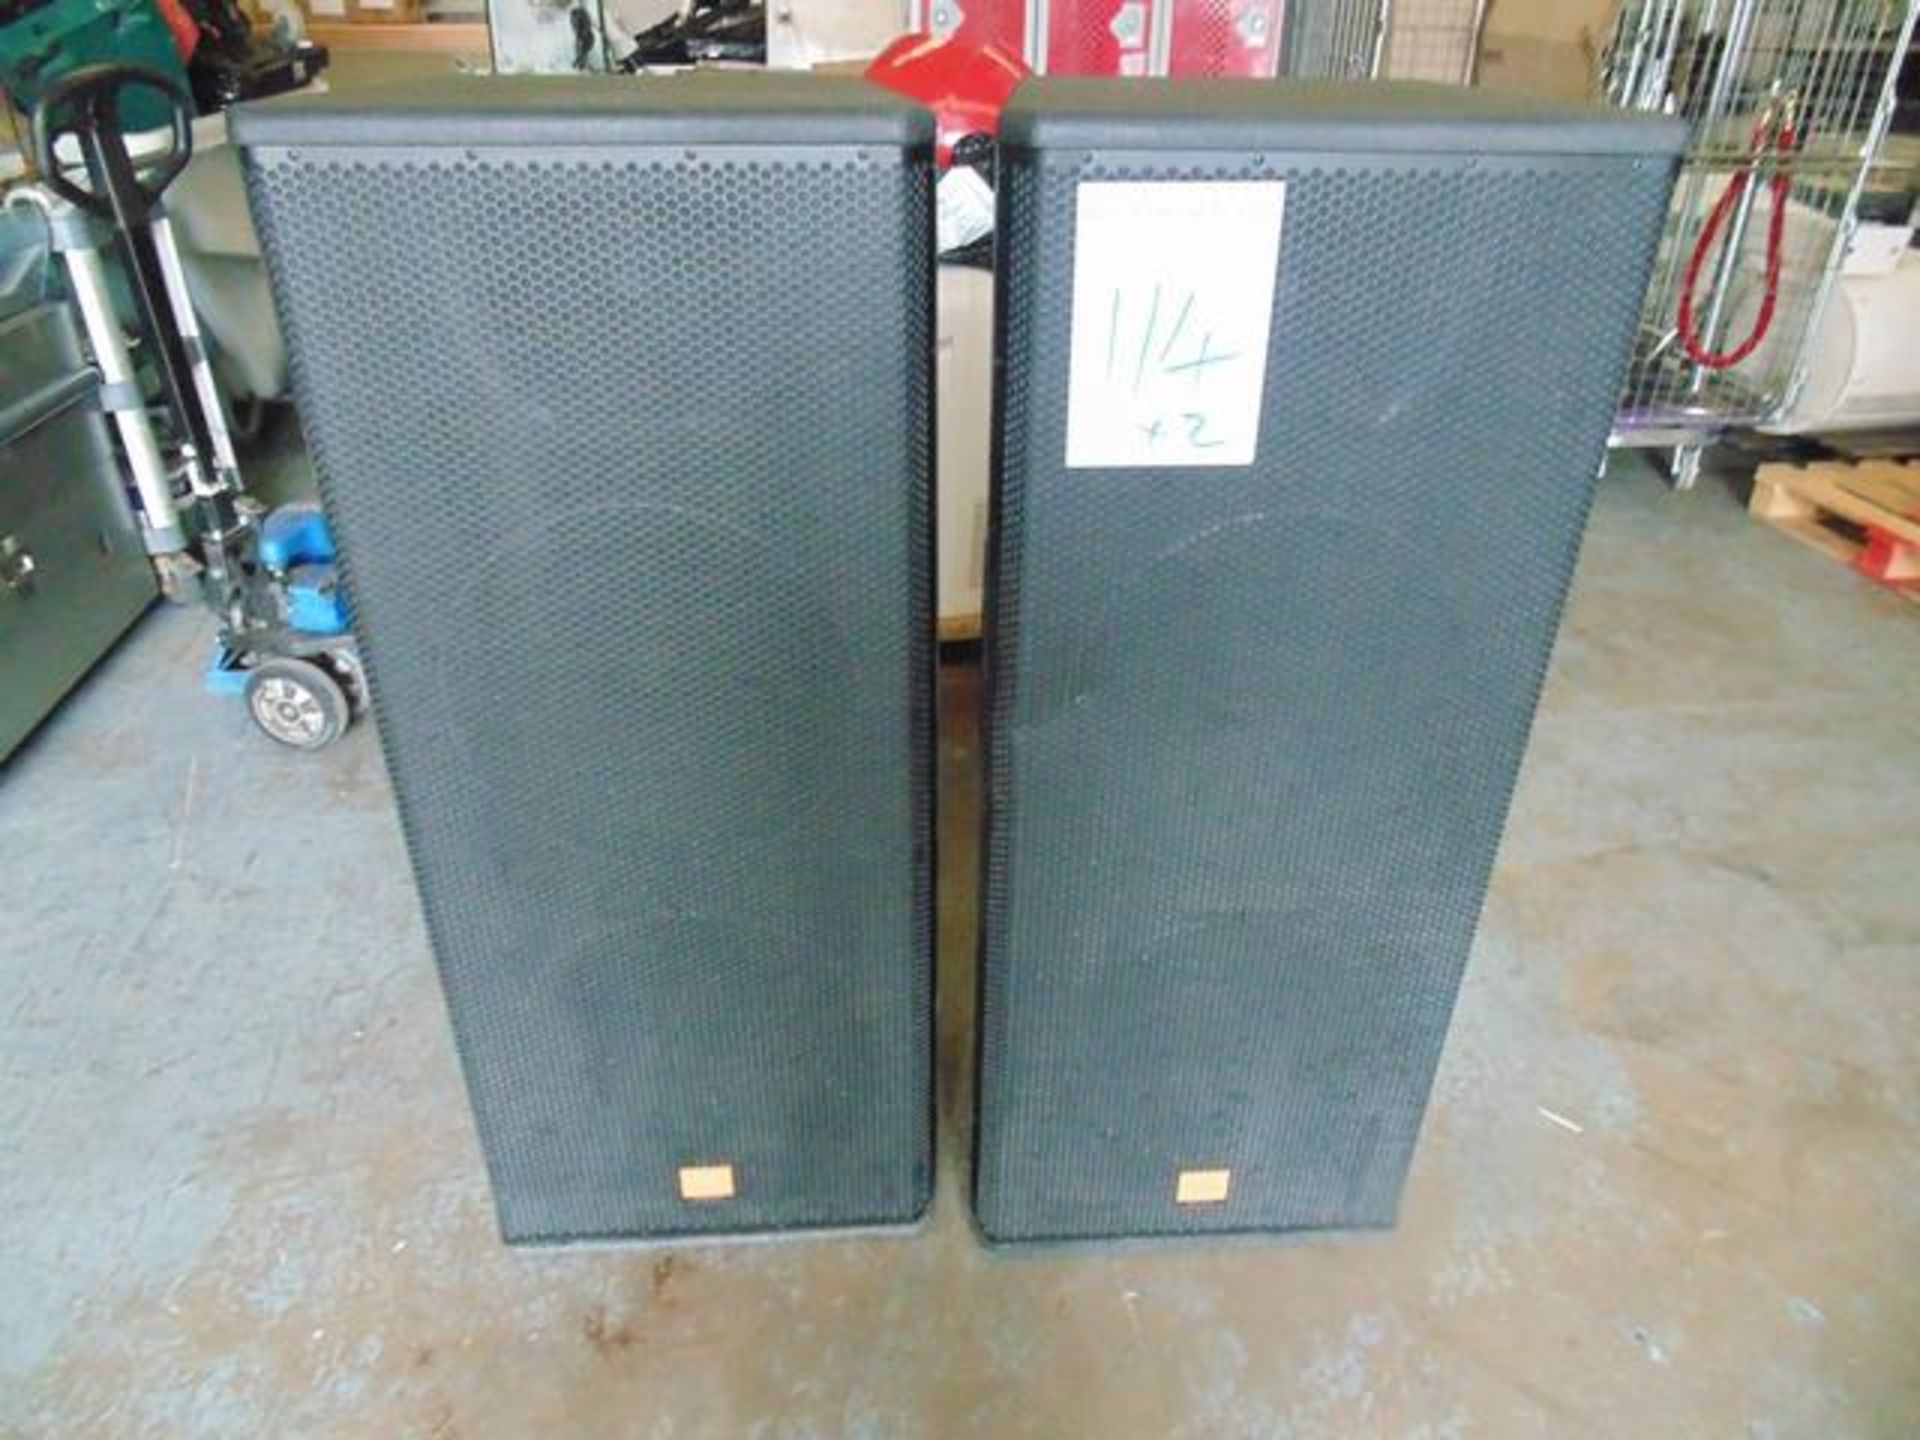 2 x jbl speakers Model MRX525